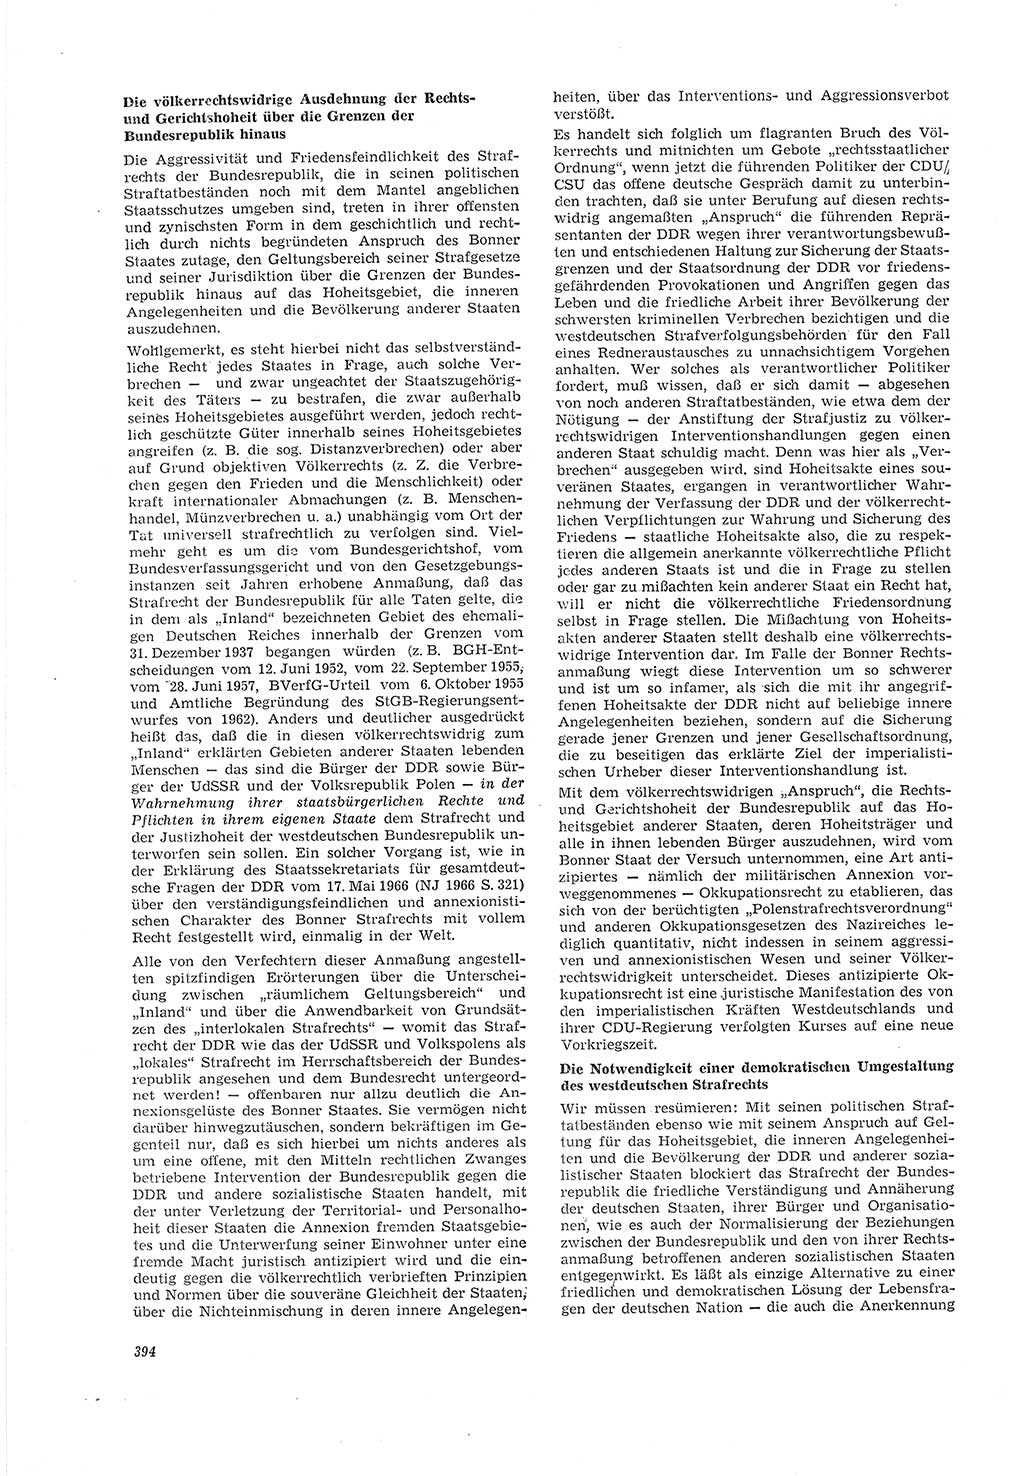 Neue Justiz (NJ), Zeitschrift für Recht und Rechtswissenschaft [Deutsche Demokratische Republik (DDR)], 20. Jahrgang 1966, Seite 394 (NJ DDR 1966, S. 394)